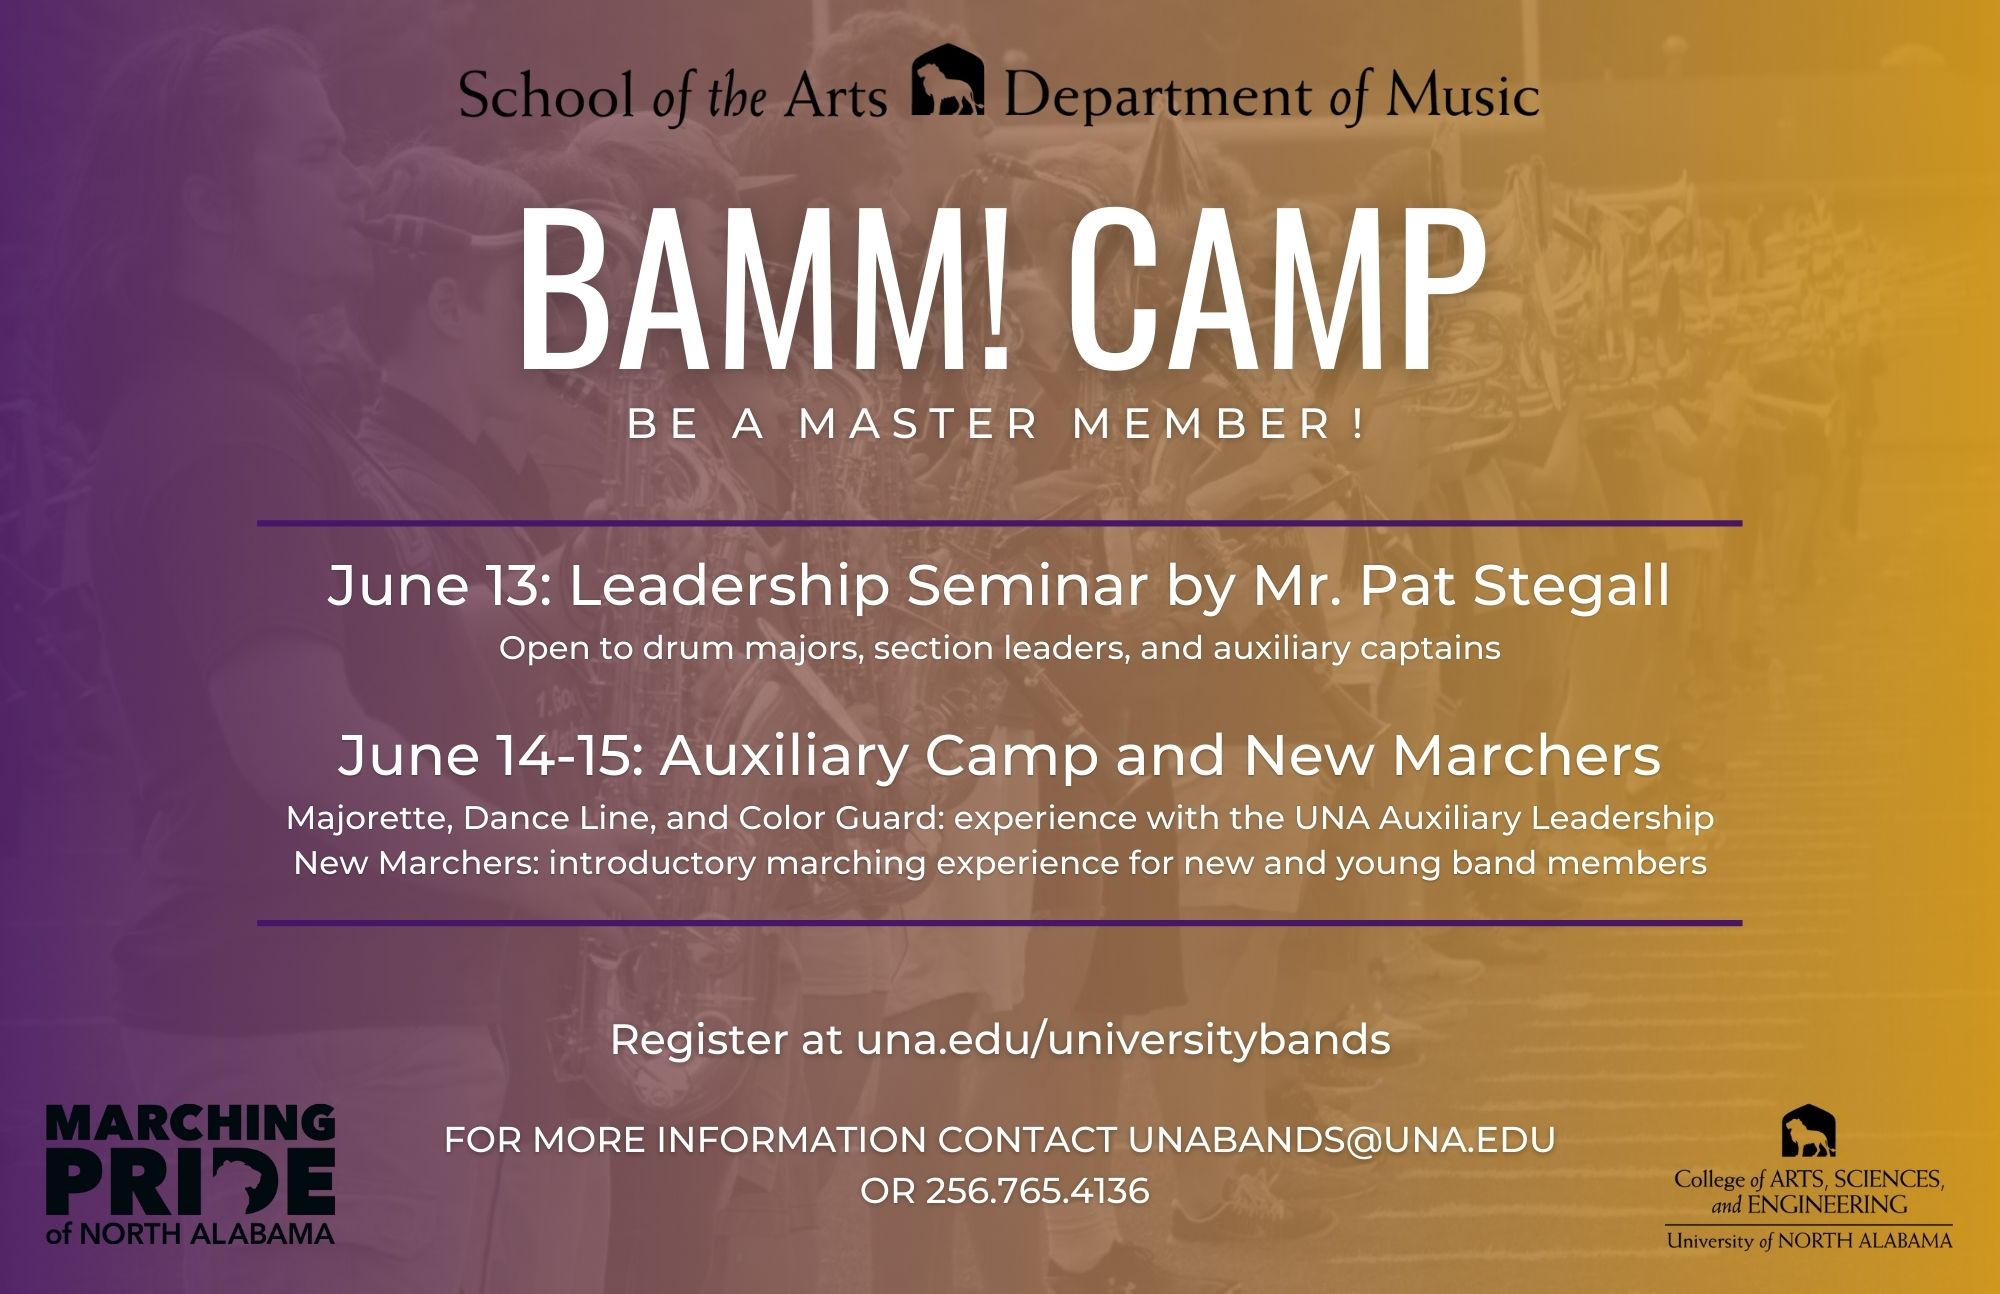 bamm-camp-poster.jpg